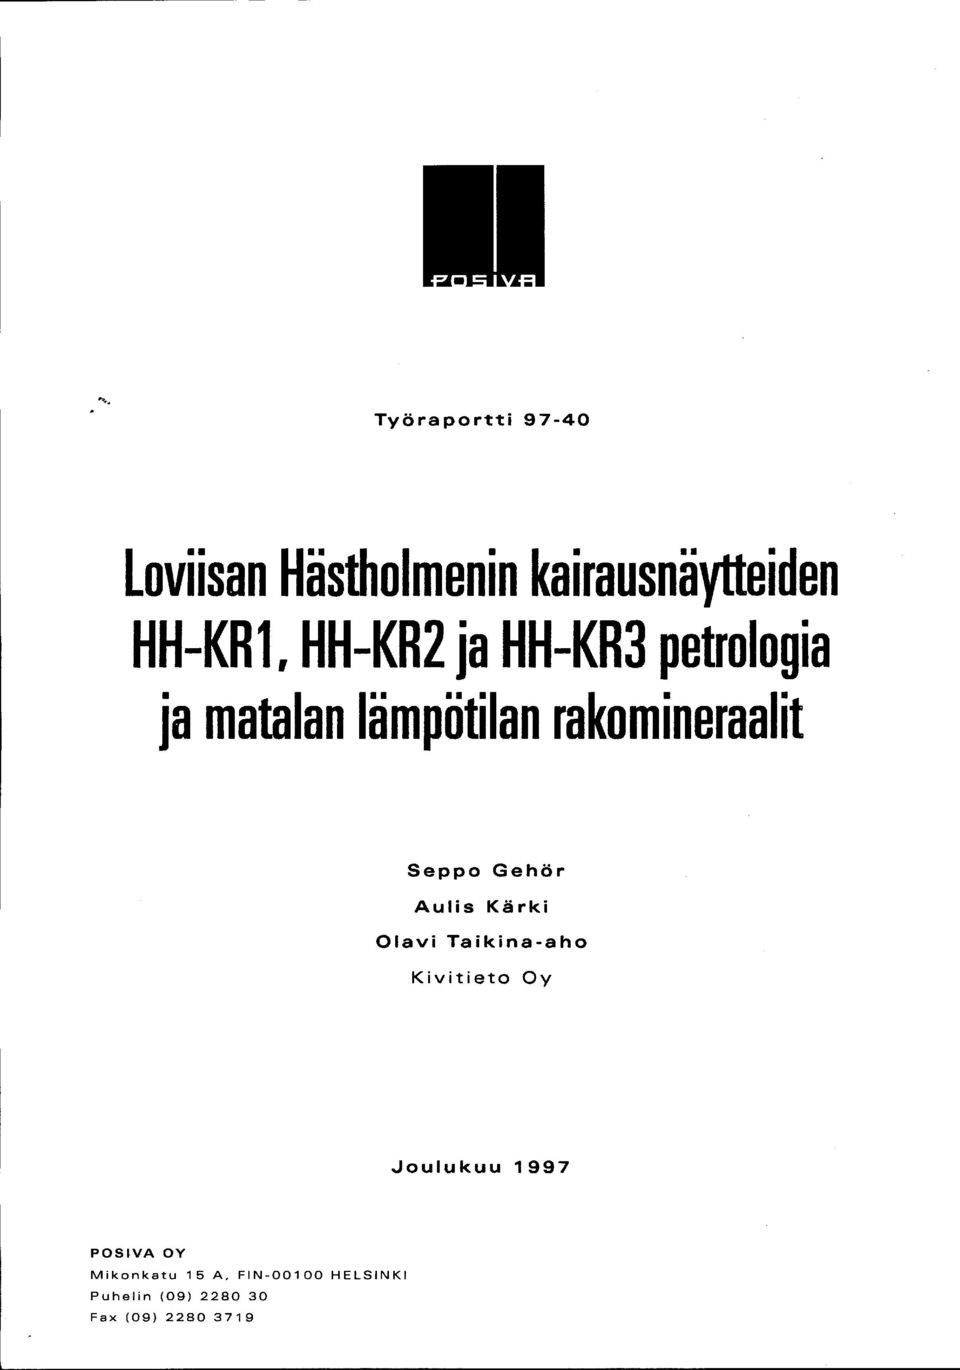 Gehör Aulis Kärki Olavi Taikinaaho Kivitieto Oy ''oulukuu 1997 POSVA